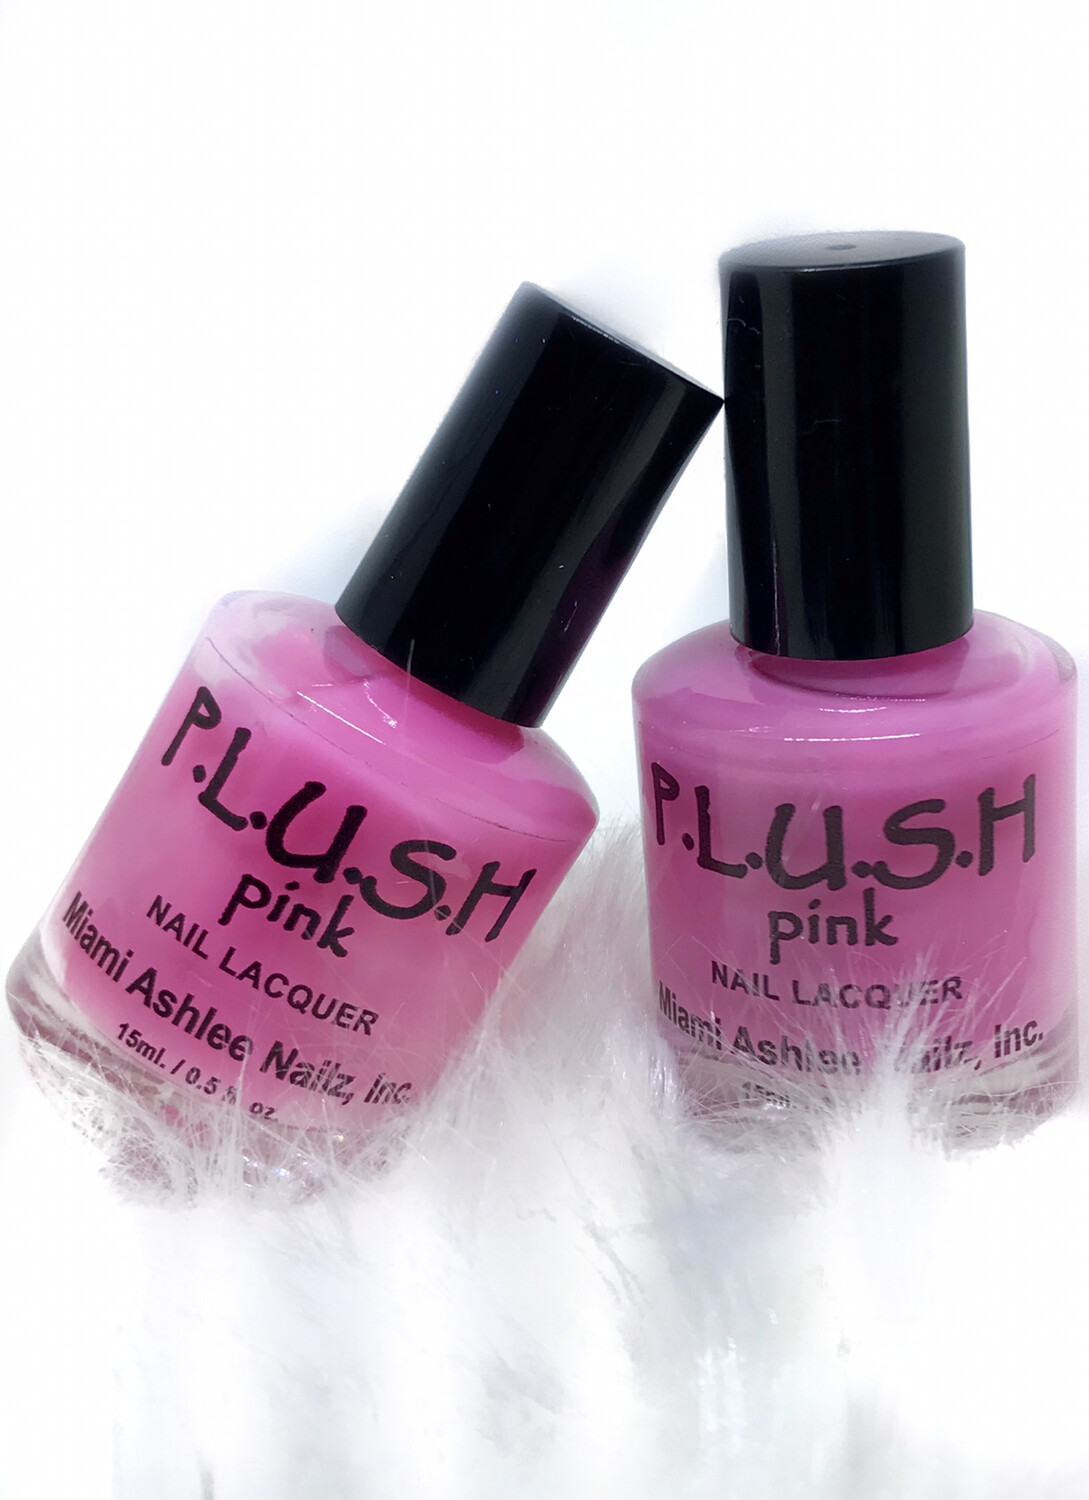 P.L.U.S.H pink polish Get 2.